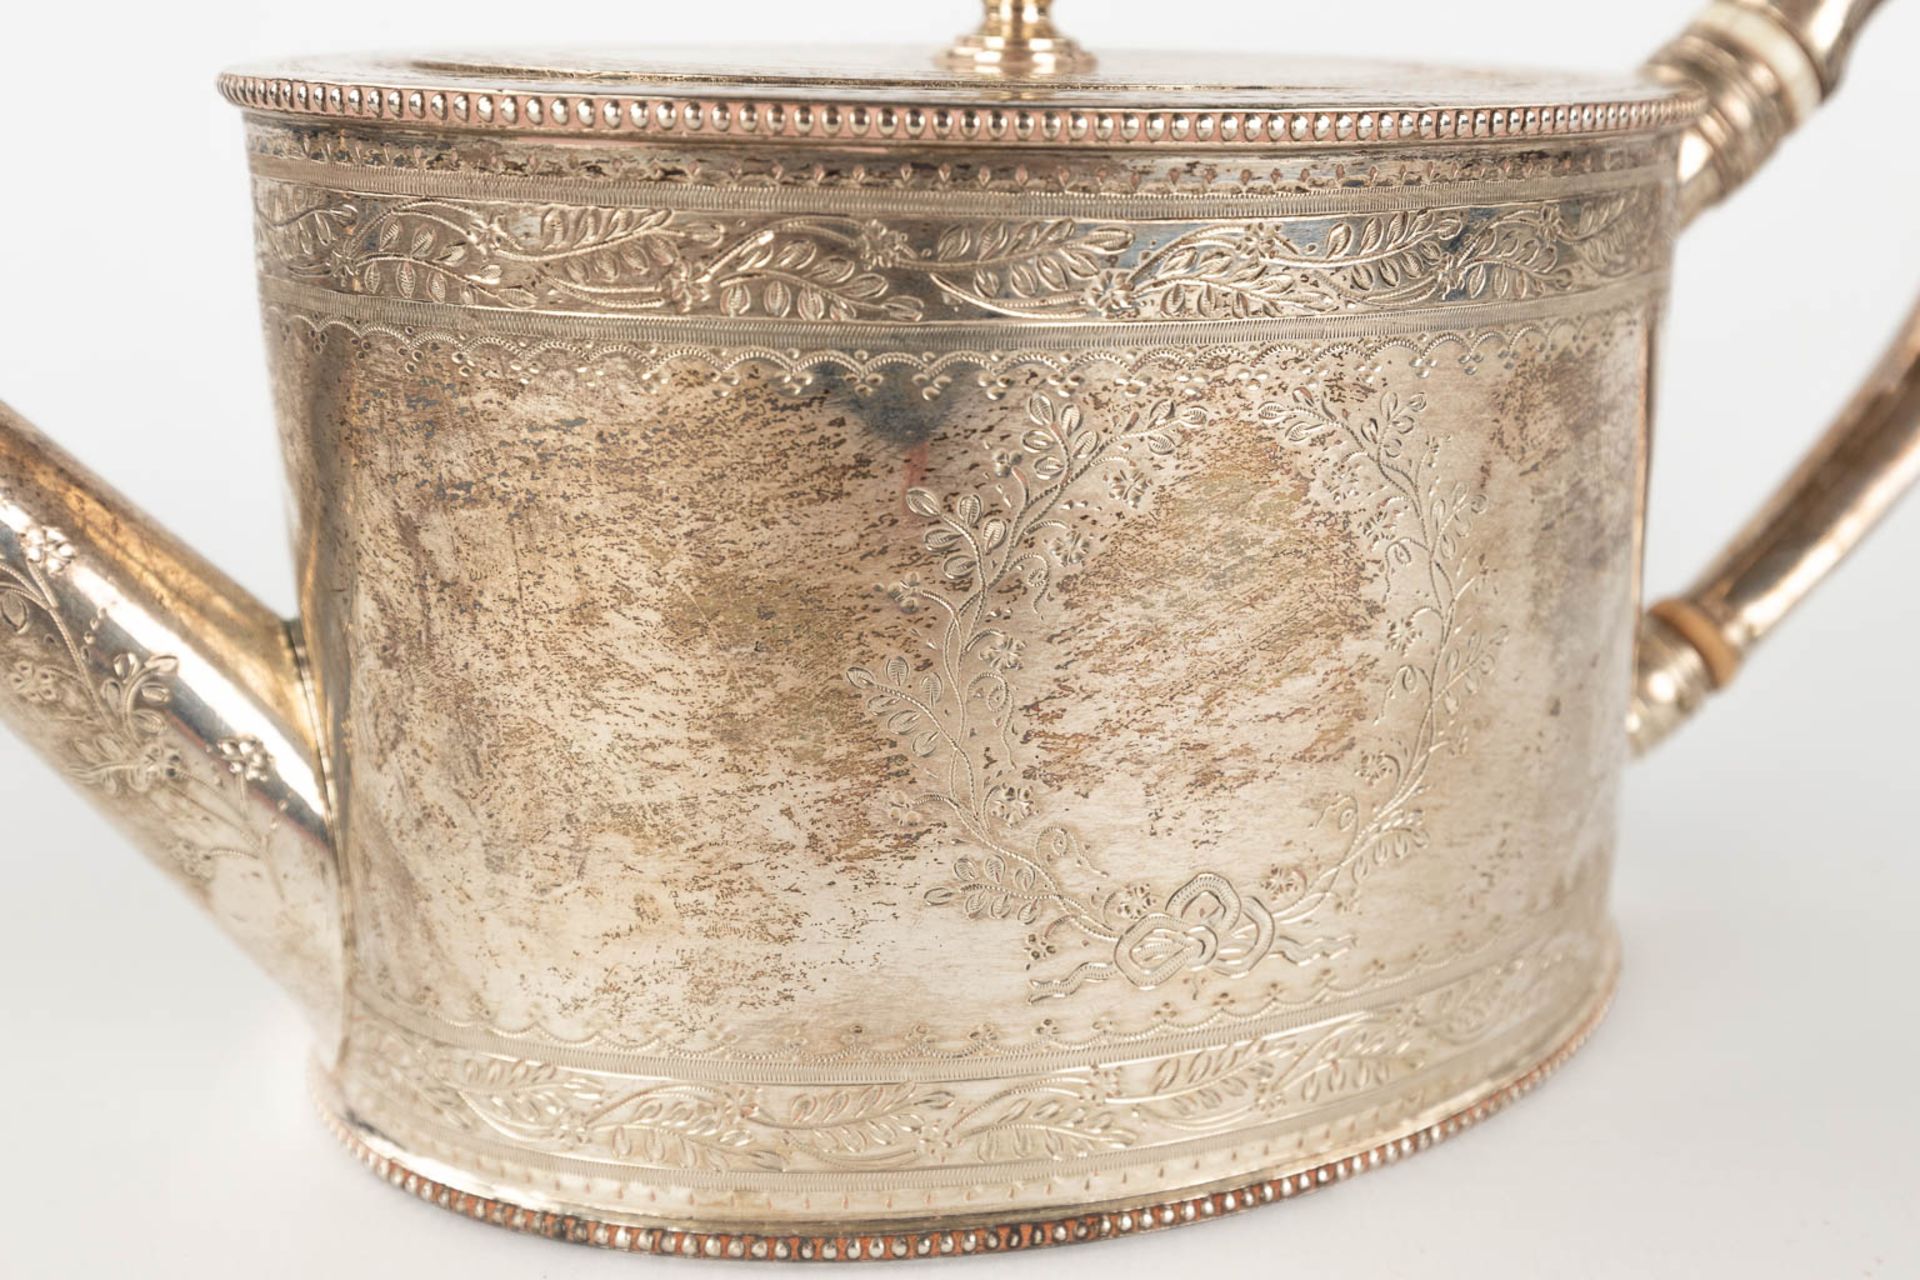 An antique tea pot, silver, London, 19th century. 520g. (L: 10 x W: 26 x H: 13 cm) - Image 12 of 14